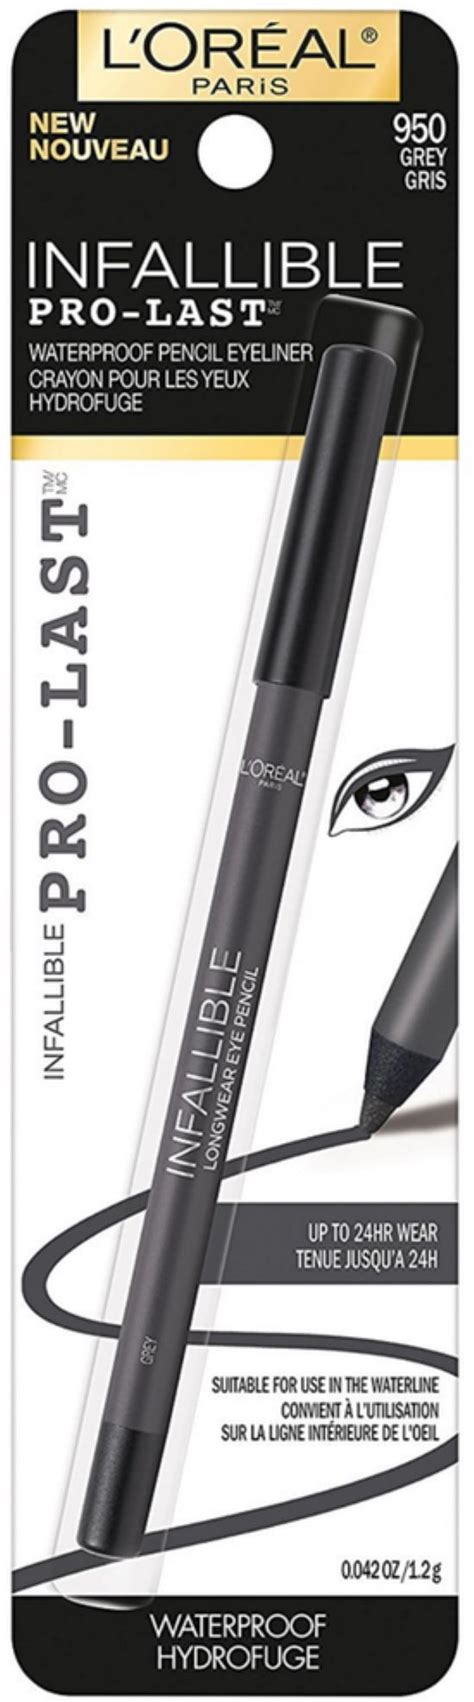 Loreal Paris Infallible Pro Last Waterproof Pencil Eyeliner Grey 1 Ea Pack Of 2 Walmart